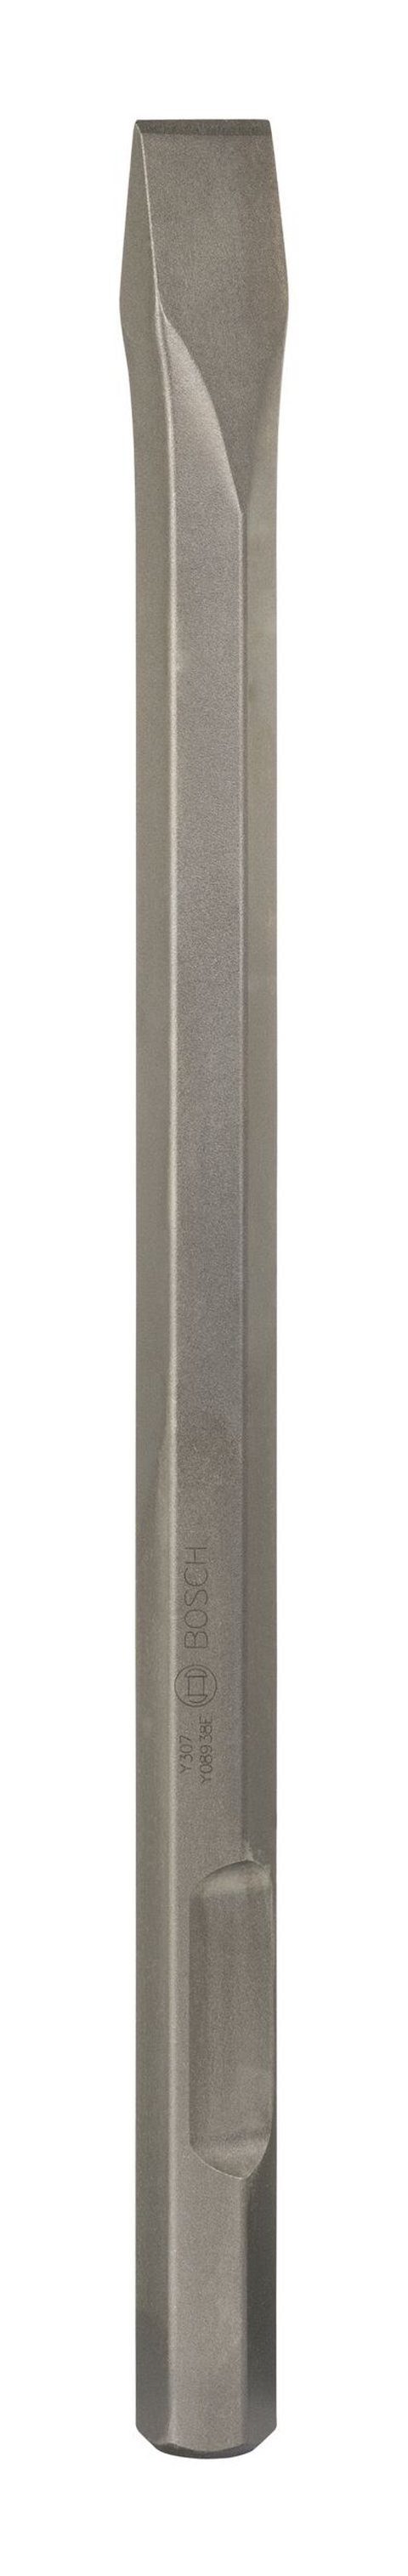 BOSCH Steinbohrer, Flachmeißel mit 28-mm-Sechskantaufnahme - 36 520 mm x